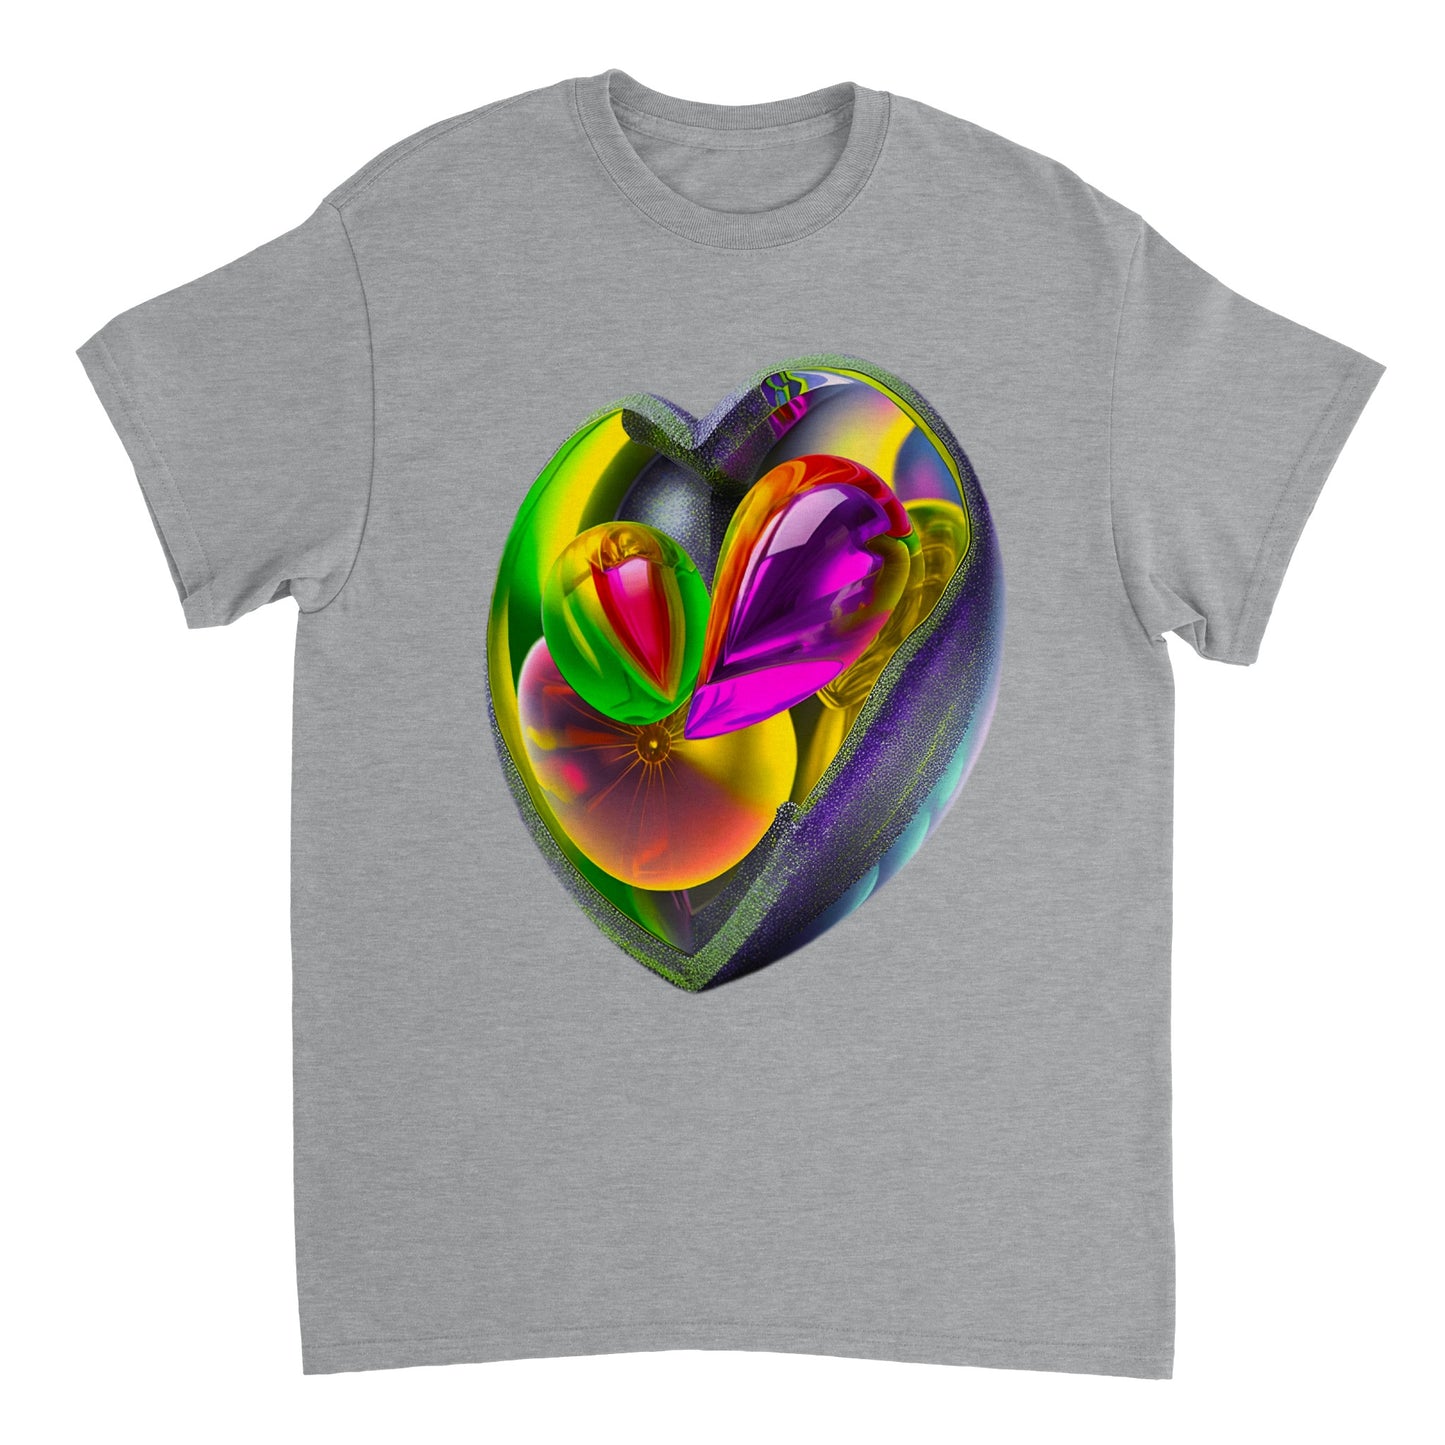 Love Heart - Heavyweight Unisex Crewneck T-shirt 49